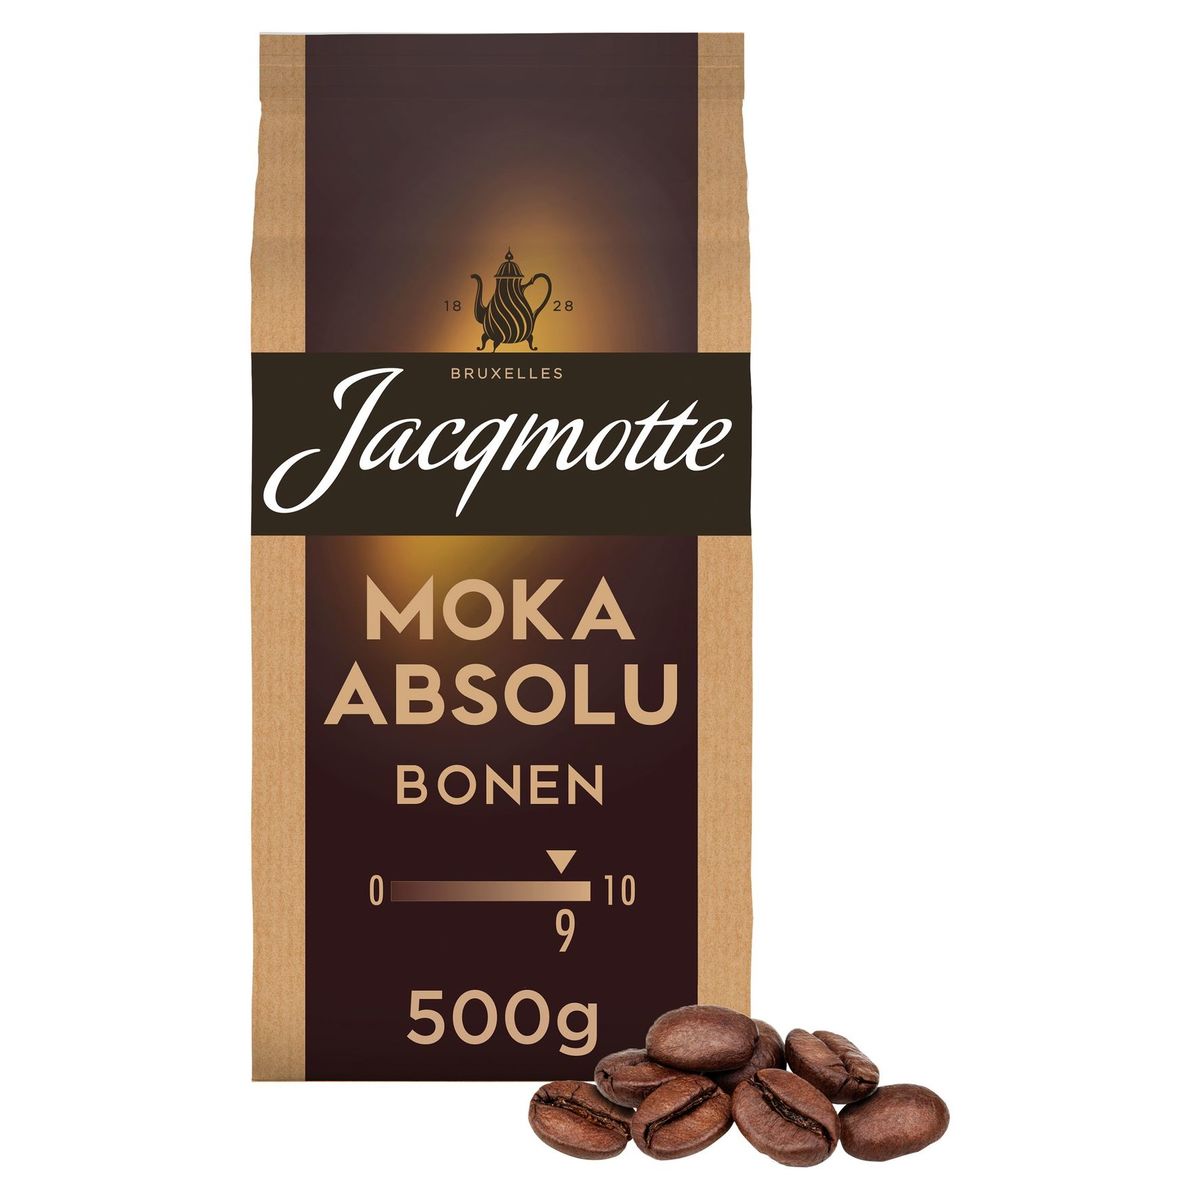 JACQMOTTE Koffie Bonen Moka Absolu 500g